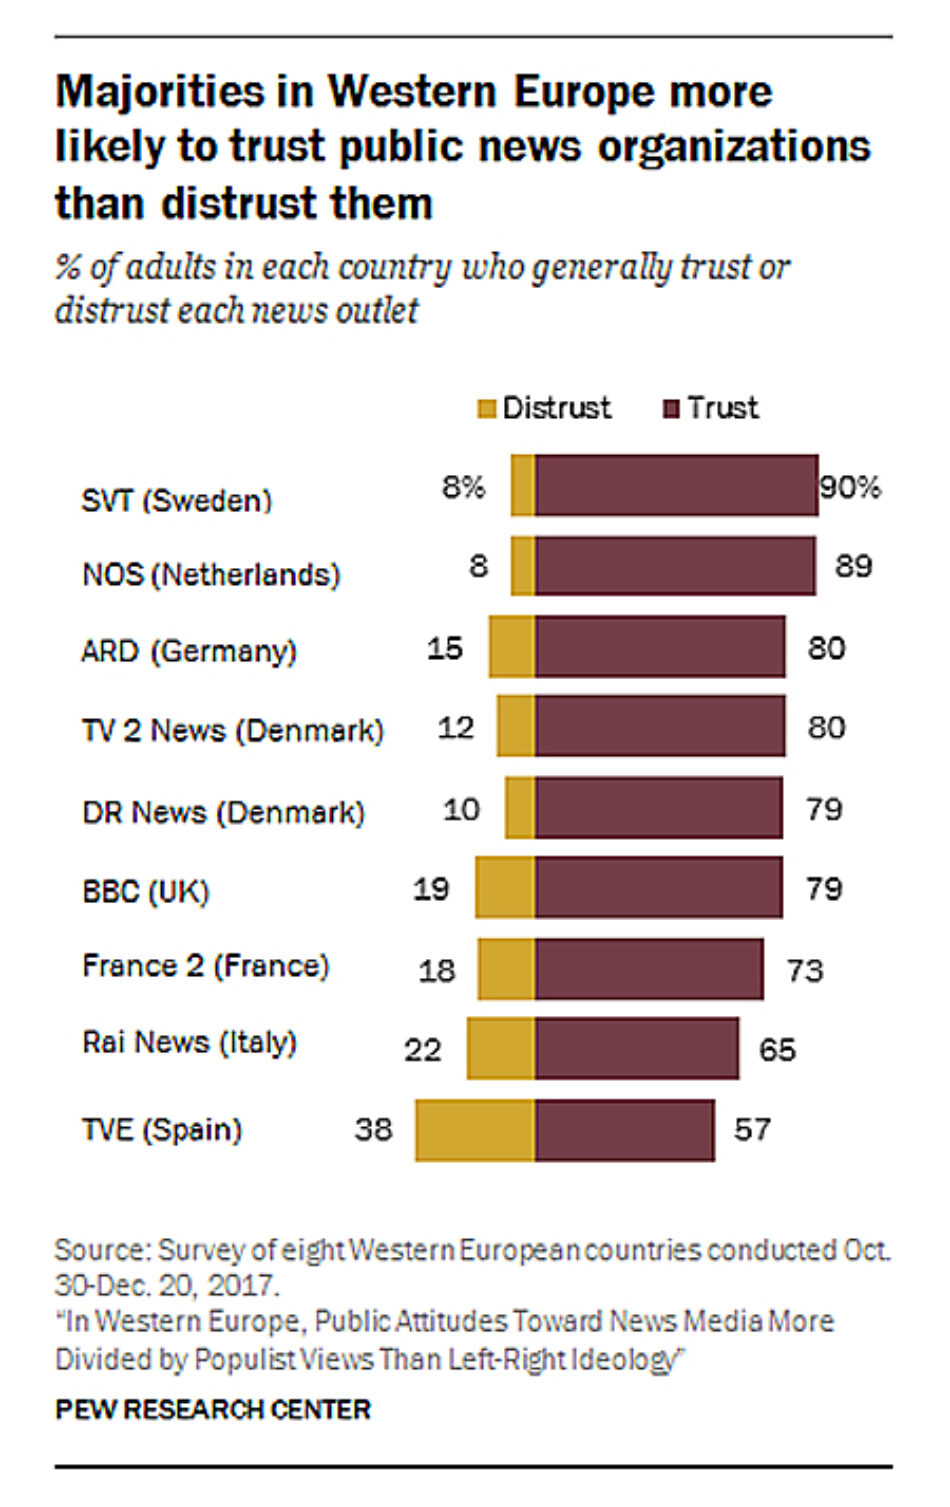 Los medios públicos de España, otra vez los menos fiables según un estudio del Pew Research Center sobre varios países de Europa